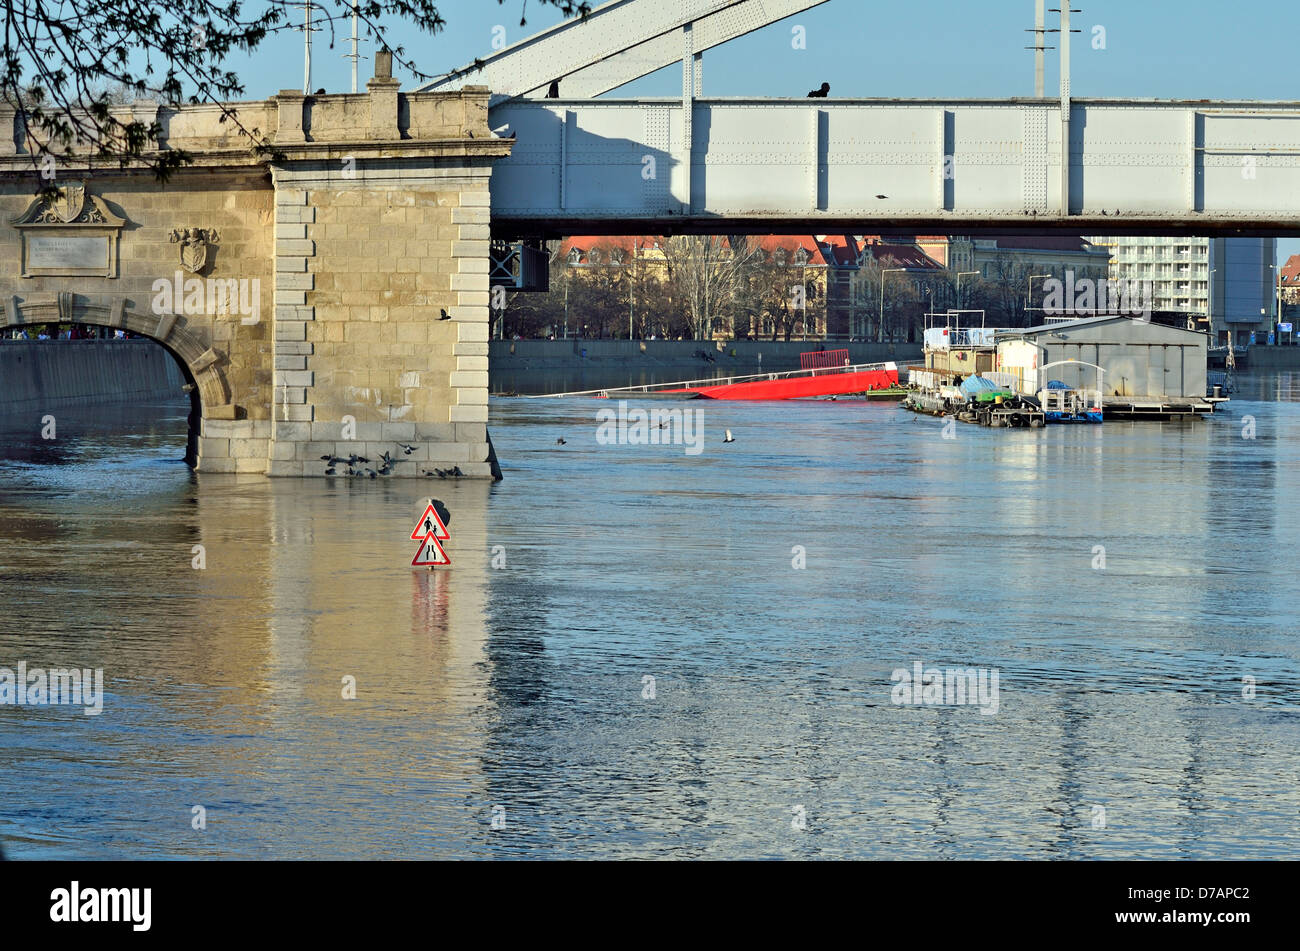 Le inondazioni del fiume Tisza a Szeged Ungheria Paesi CEE città interna dettaglio Bridge Road Sign sommerse da acqua di inondazione su anche Rakpart Foto Stock